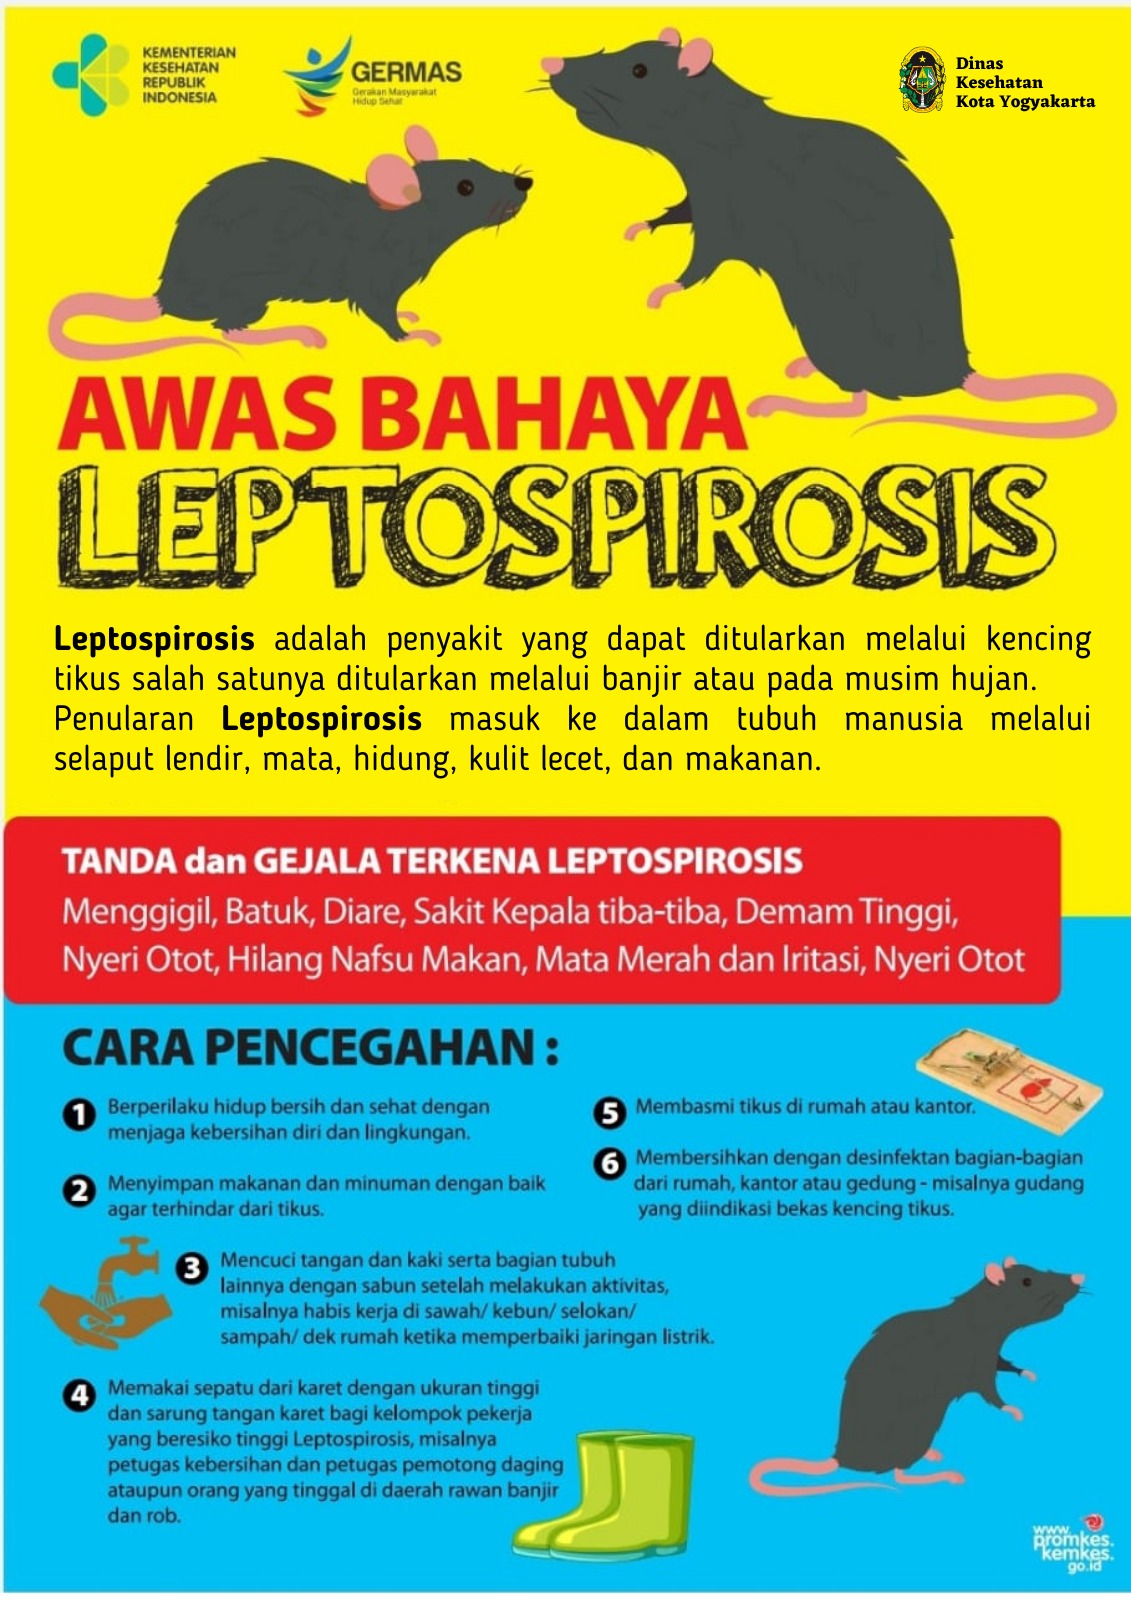 Pemkot Yogya Waspadai Penyakit Leptospirosis di Musim Hujan